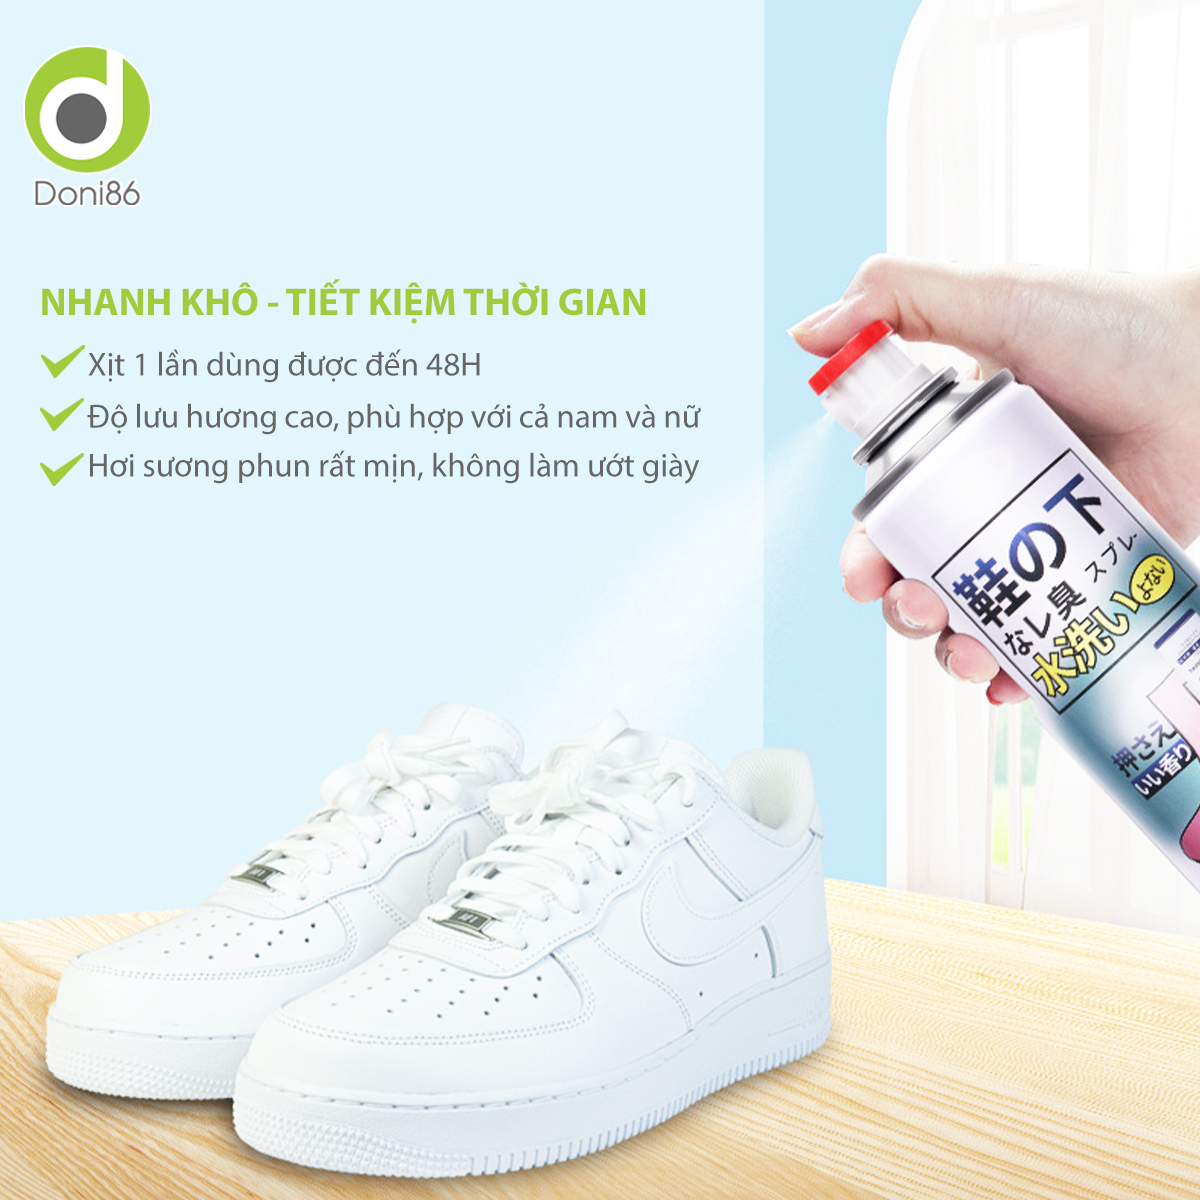 Bình xịt ngăn ngừa mồ hôi, vi khuẩn cho đôi giày của bạn, hương thơm mát - Doni - DOPK358